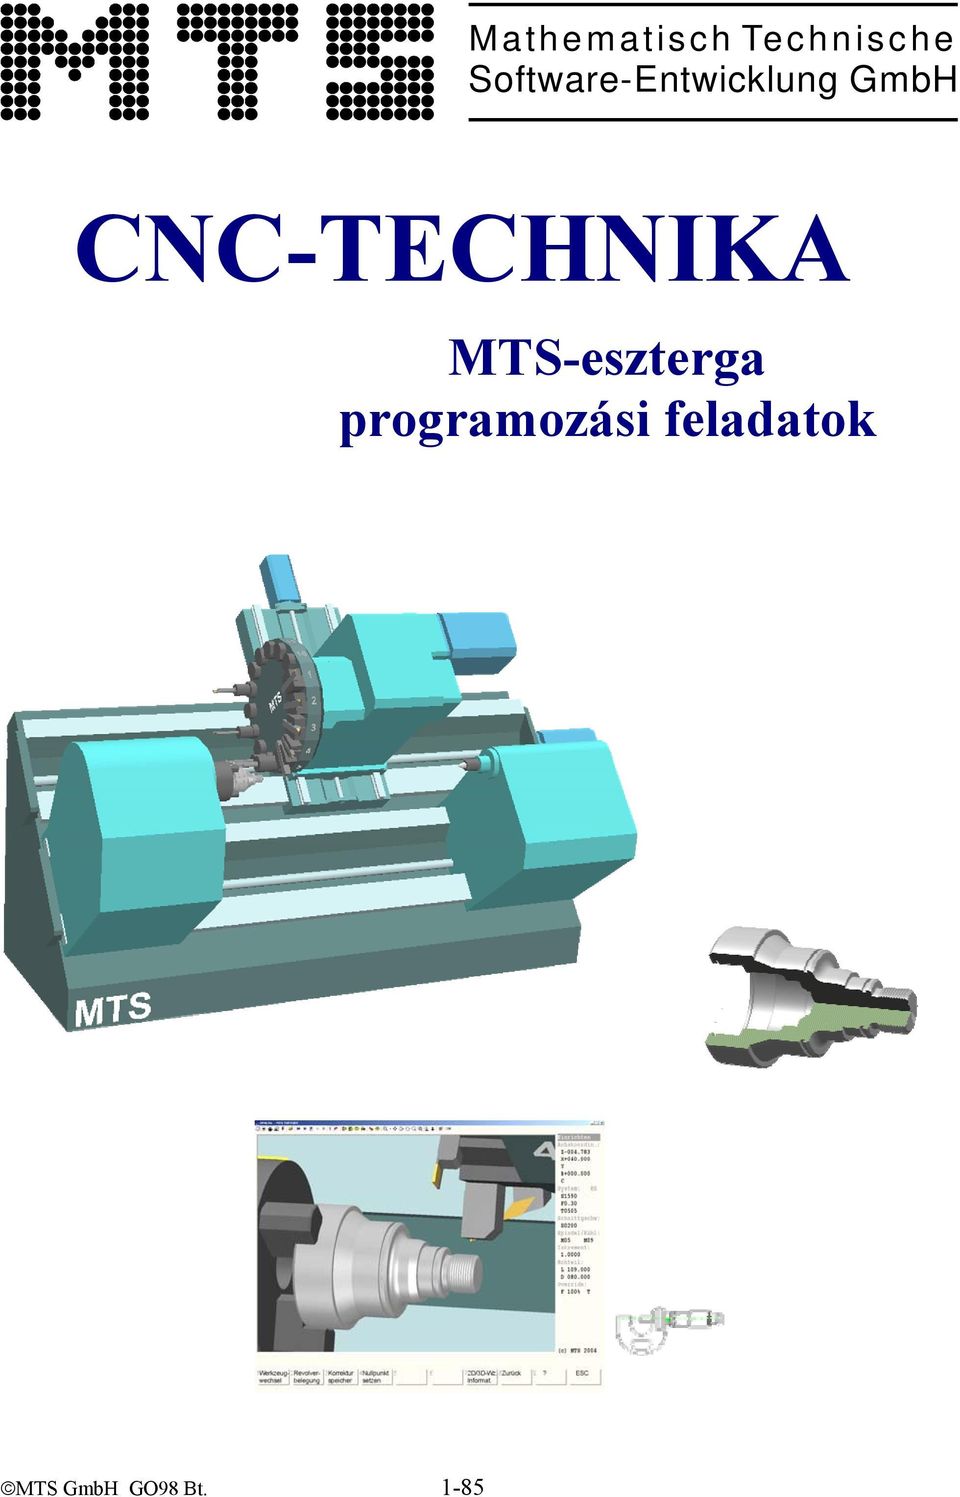 CNC-TECHNIKA MTS-eszterga